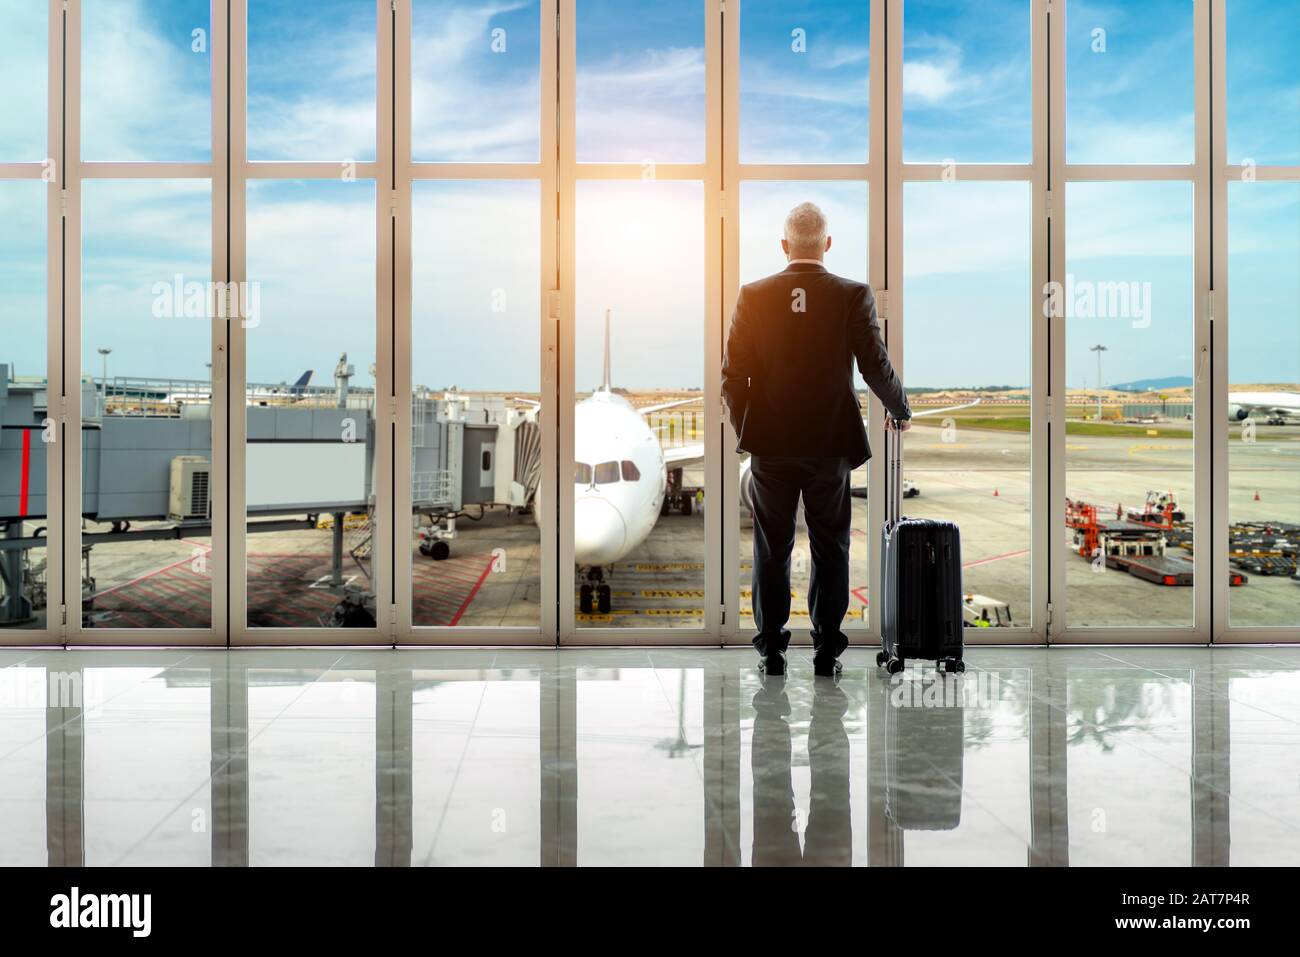 Homme d'affaires debout avec des bagages près de la fenêtre dans la zone de départ du terminal de l'aéroport international. Concept Businesstravel. Banque D'Images